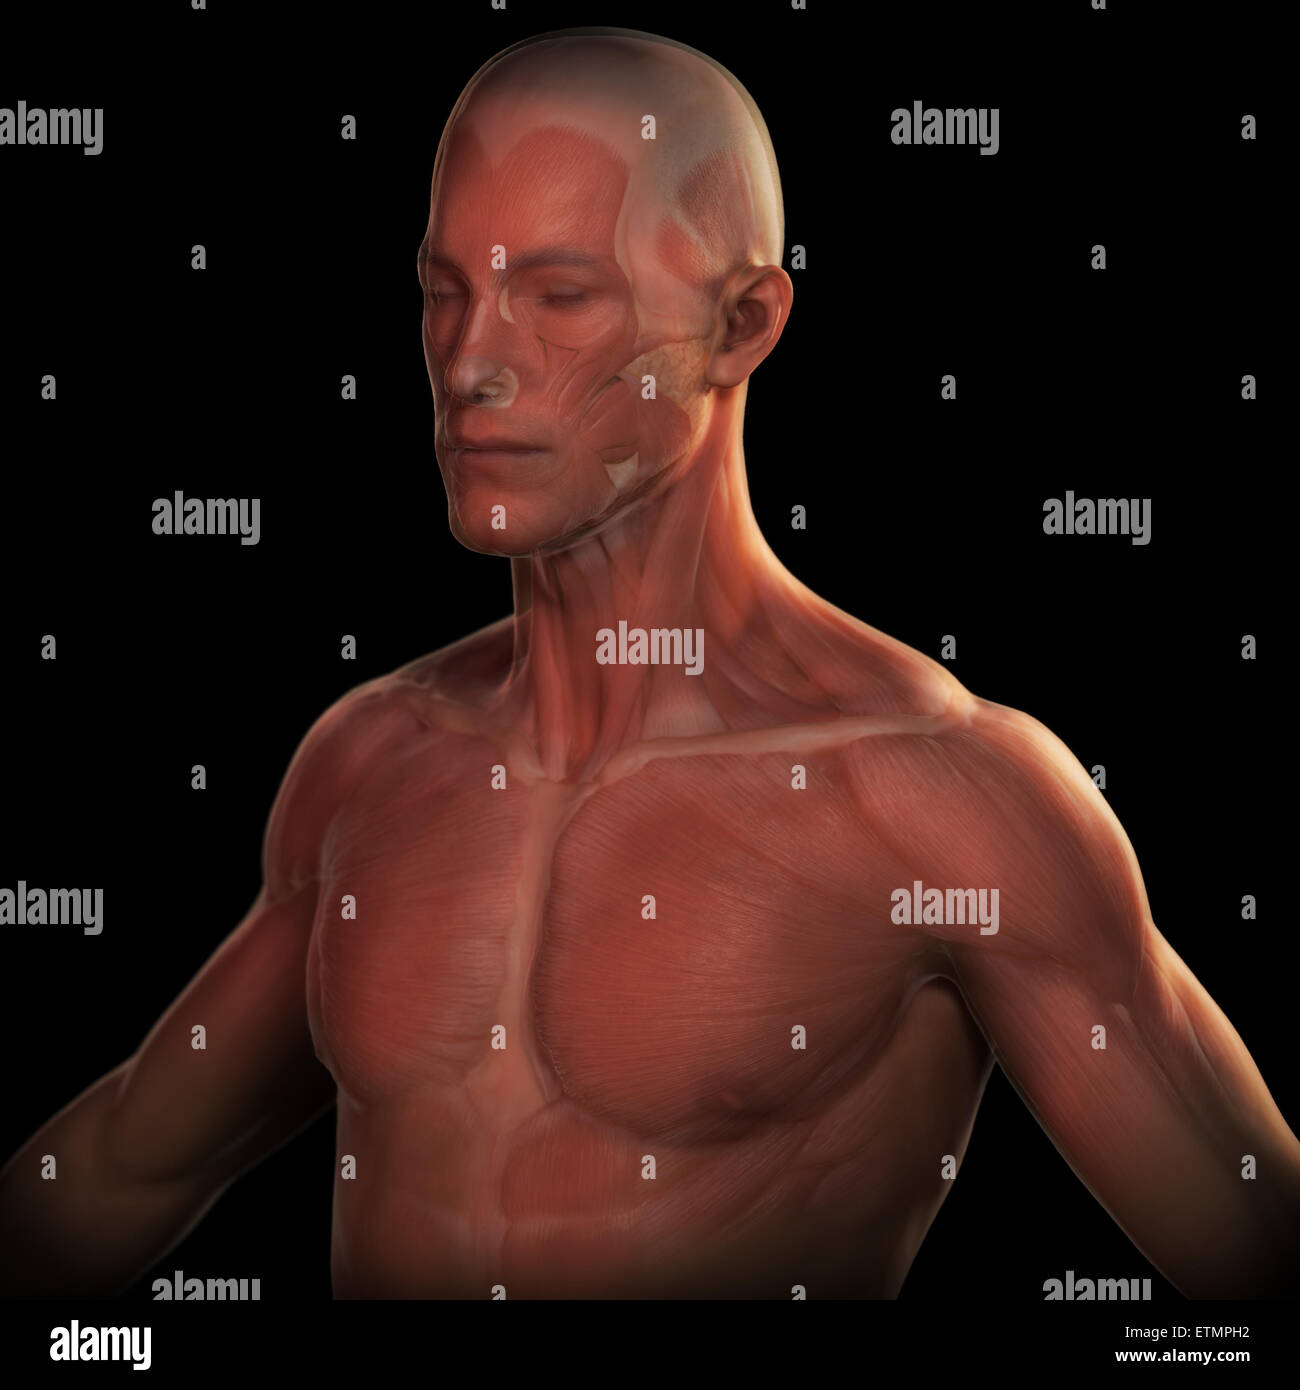 Konzeptbild des Gesichts und des oberen Körpers mit der Muskulatur unter der Haut sichtbar. Stockfoto